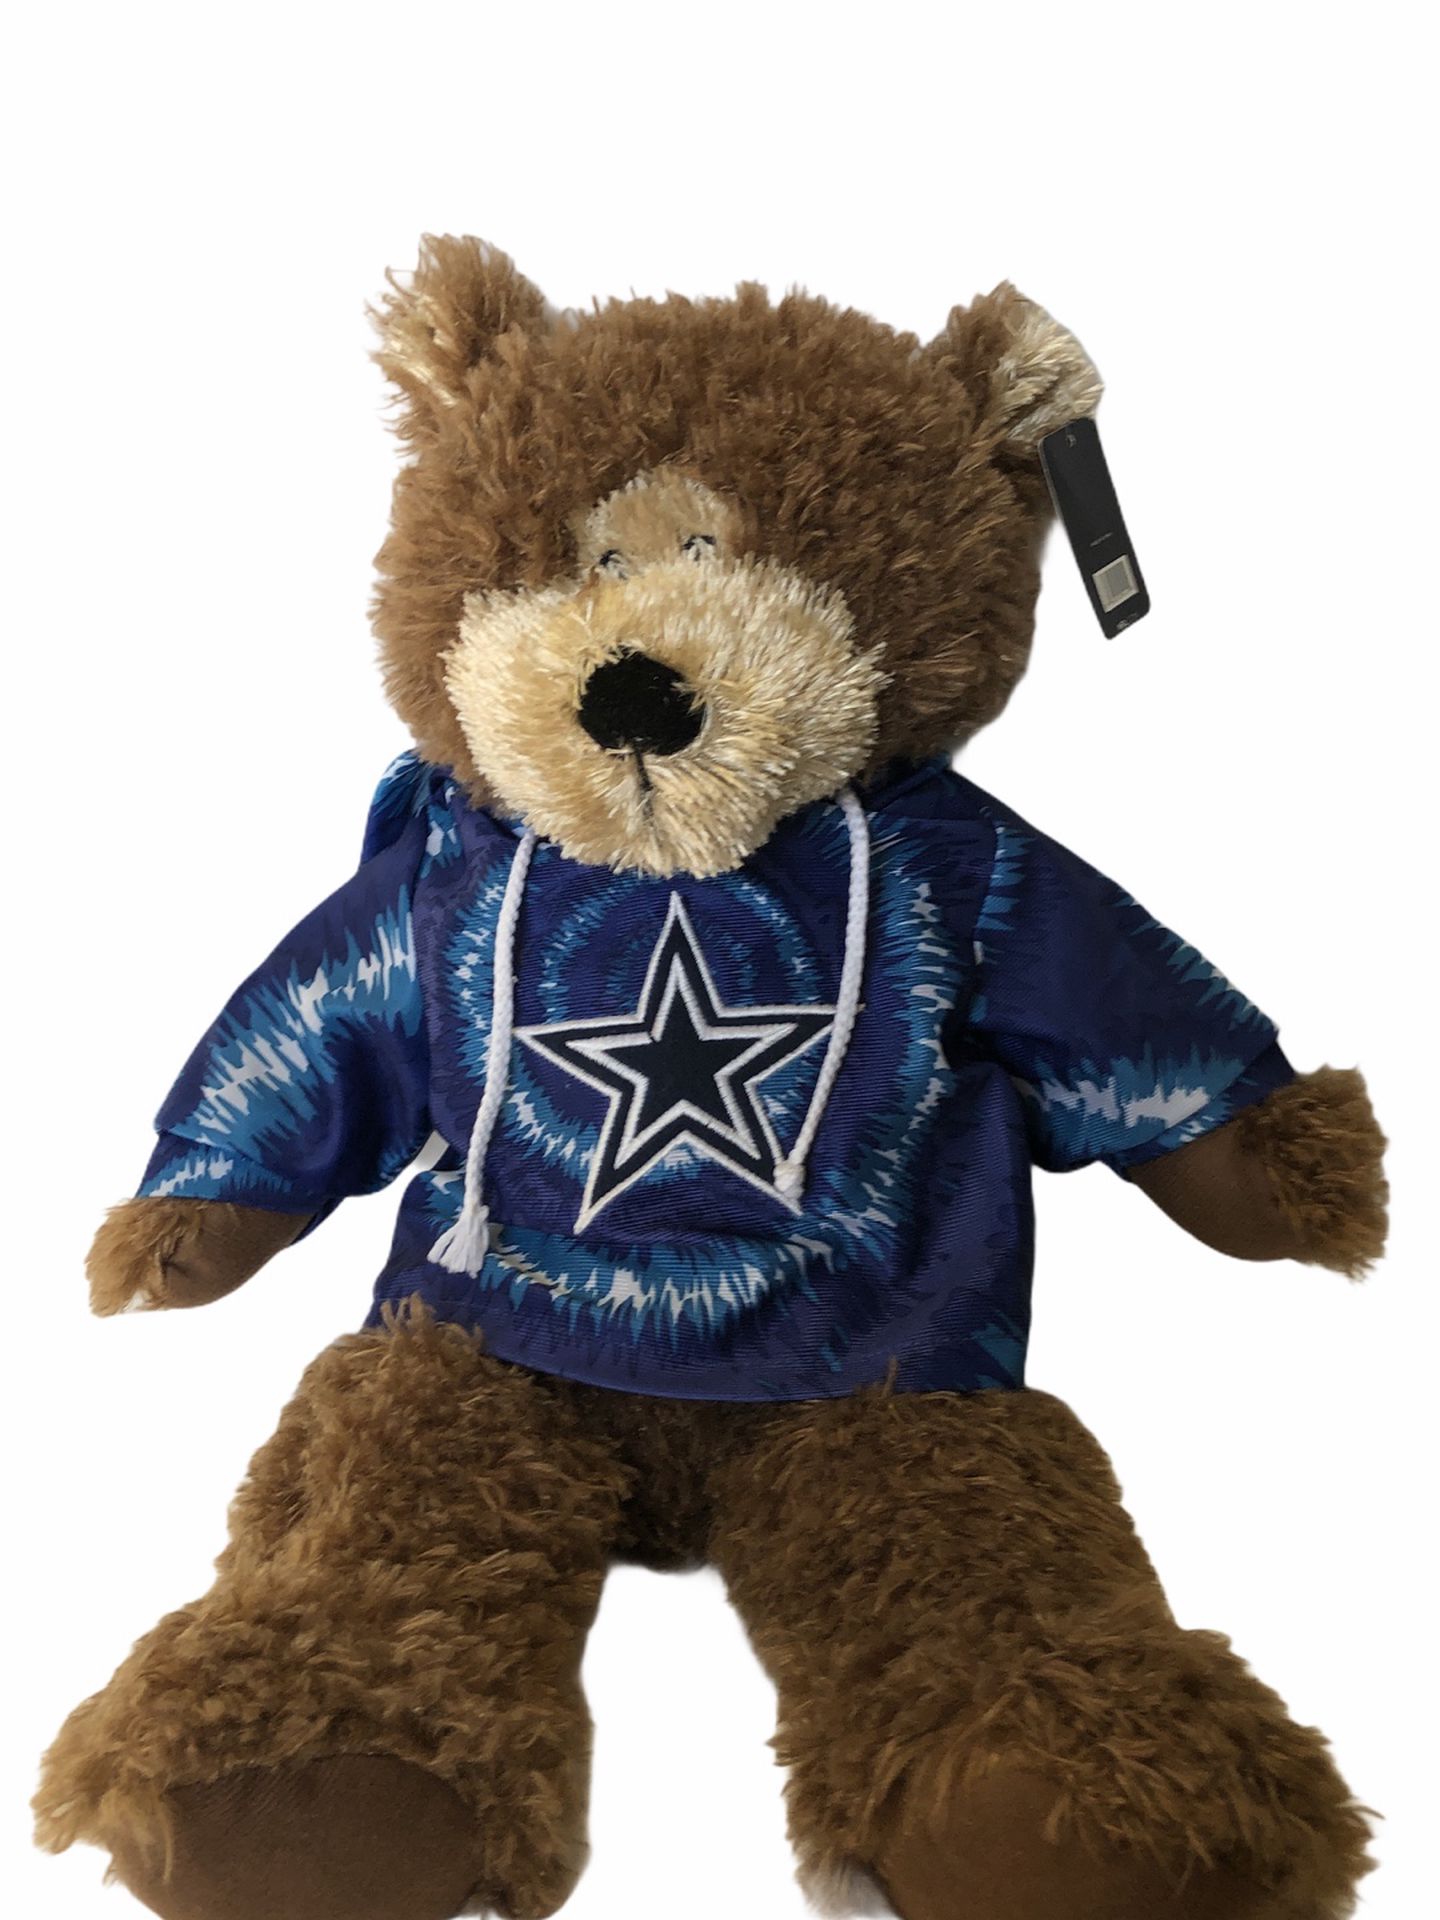 Dallas Cowboys NFL Authentic 21 inch Teddy Bear - NWT